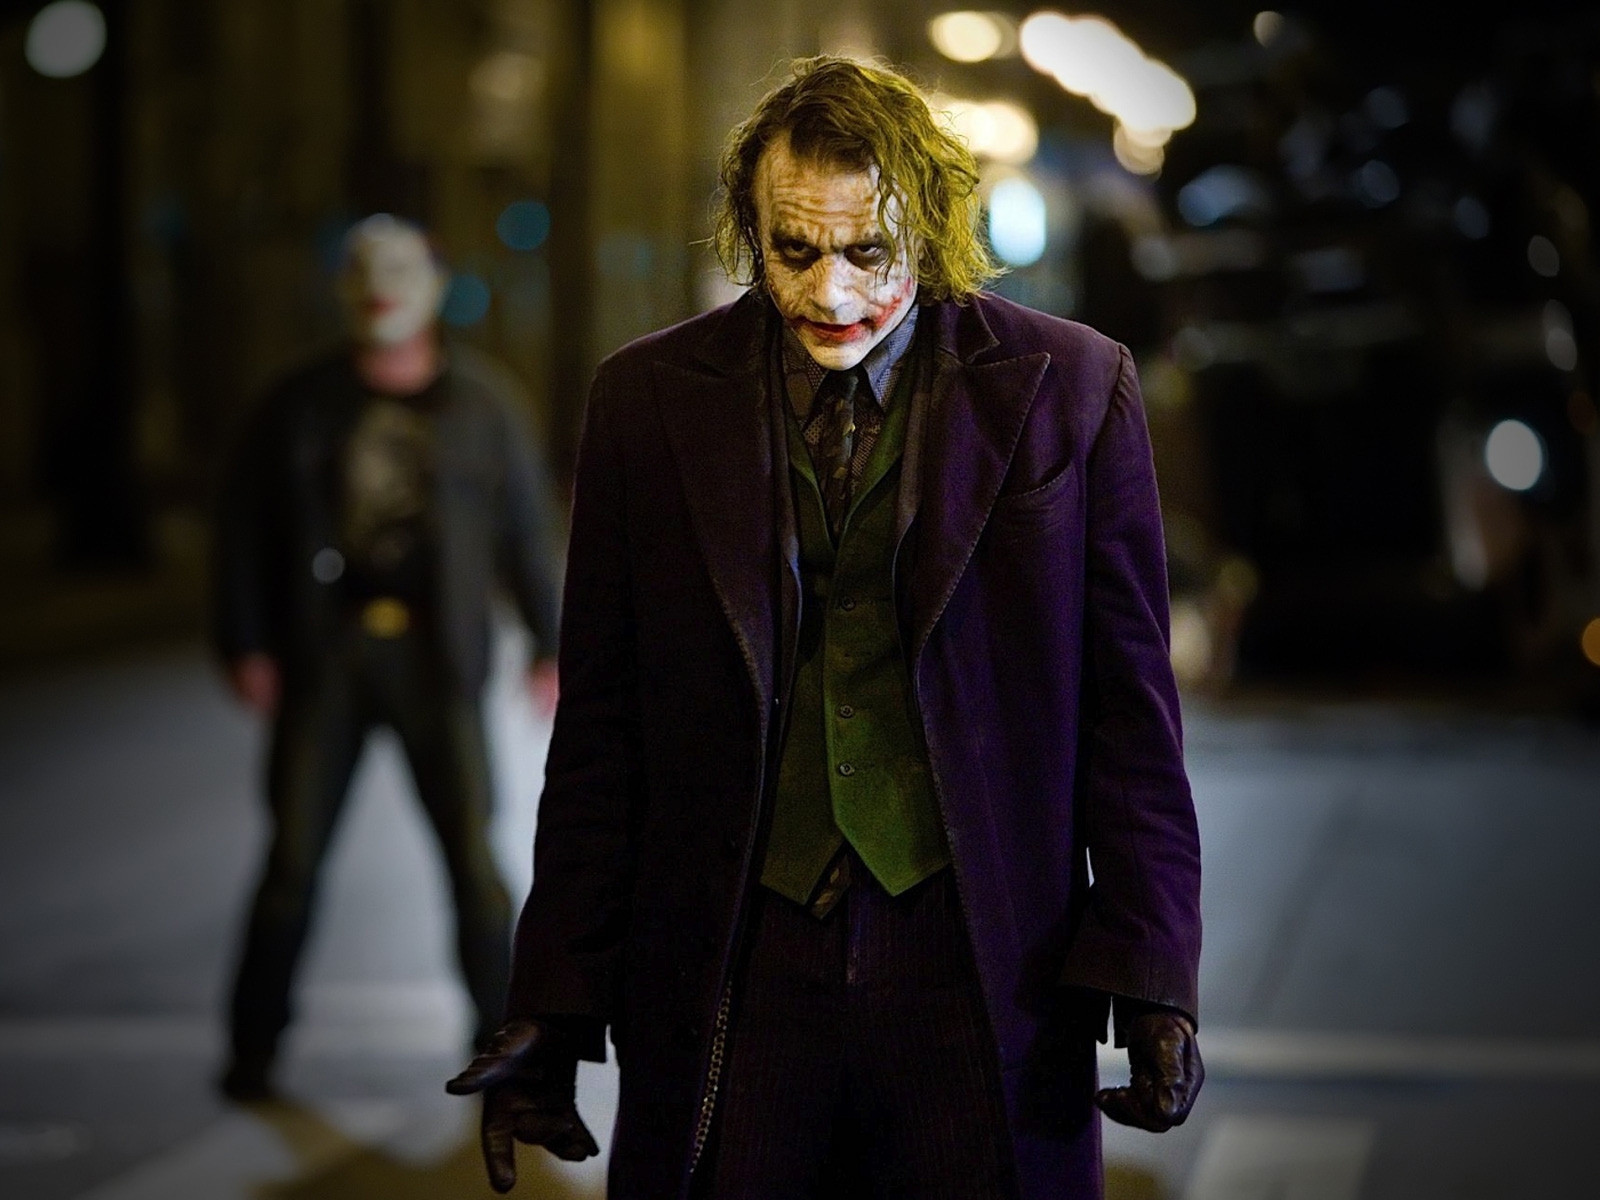 The Joker for 1600 x 1200 resolution